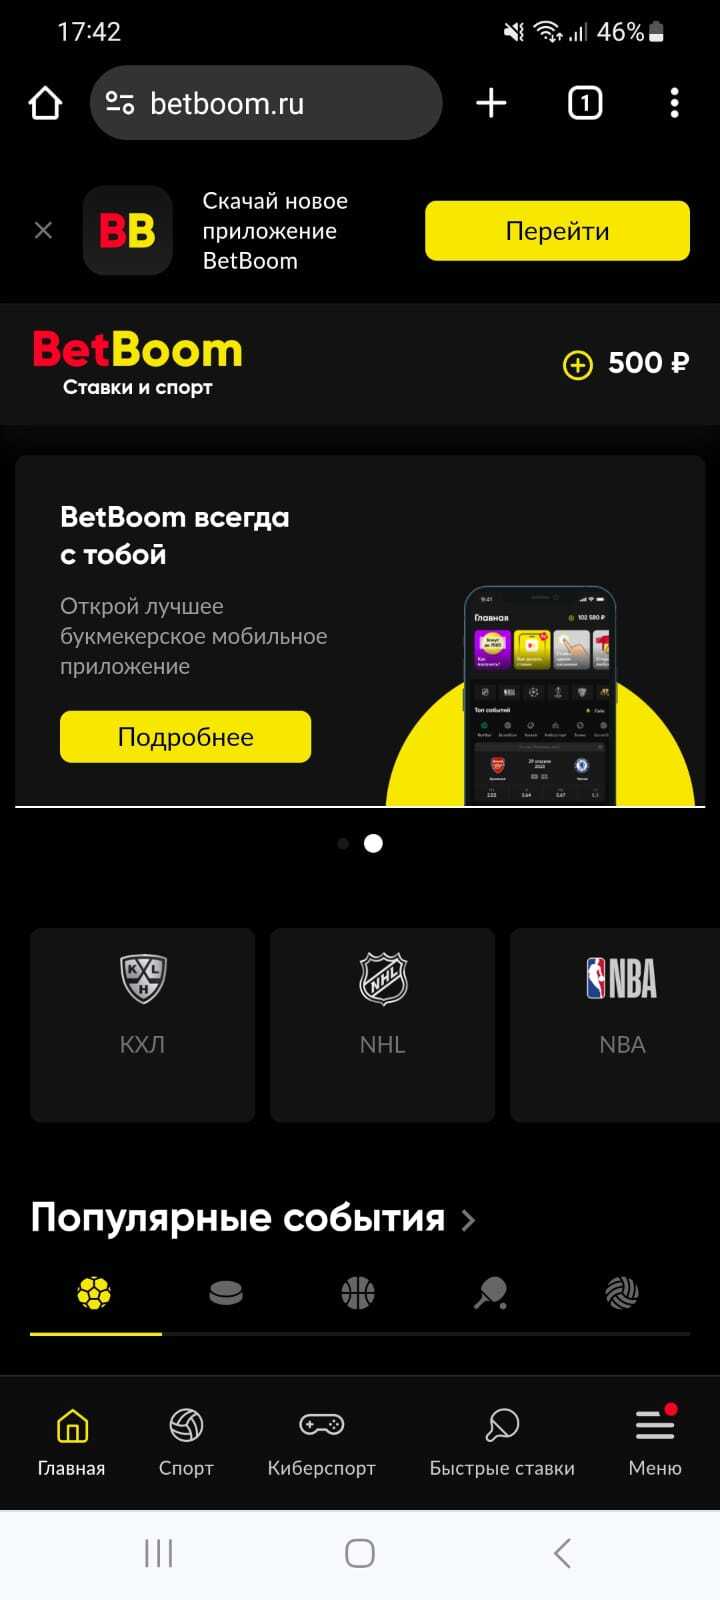 Главная страница мобильной версии сайта BetBoom